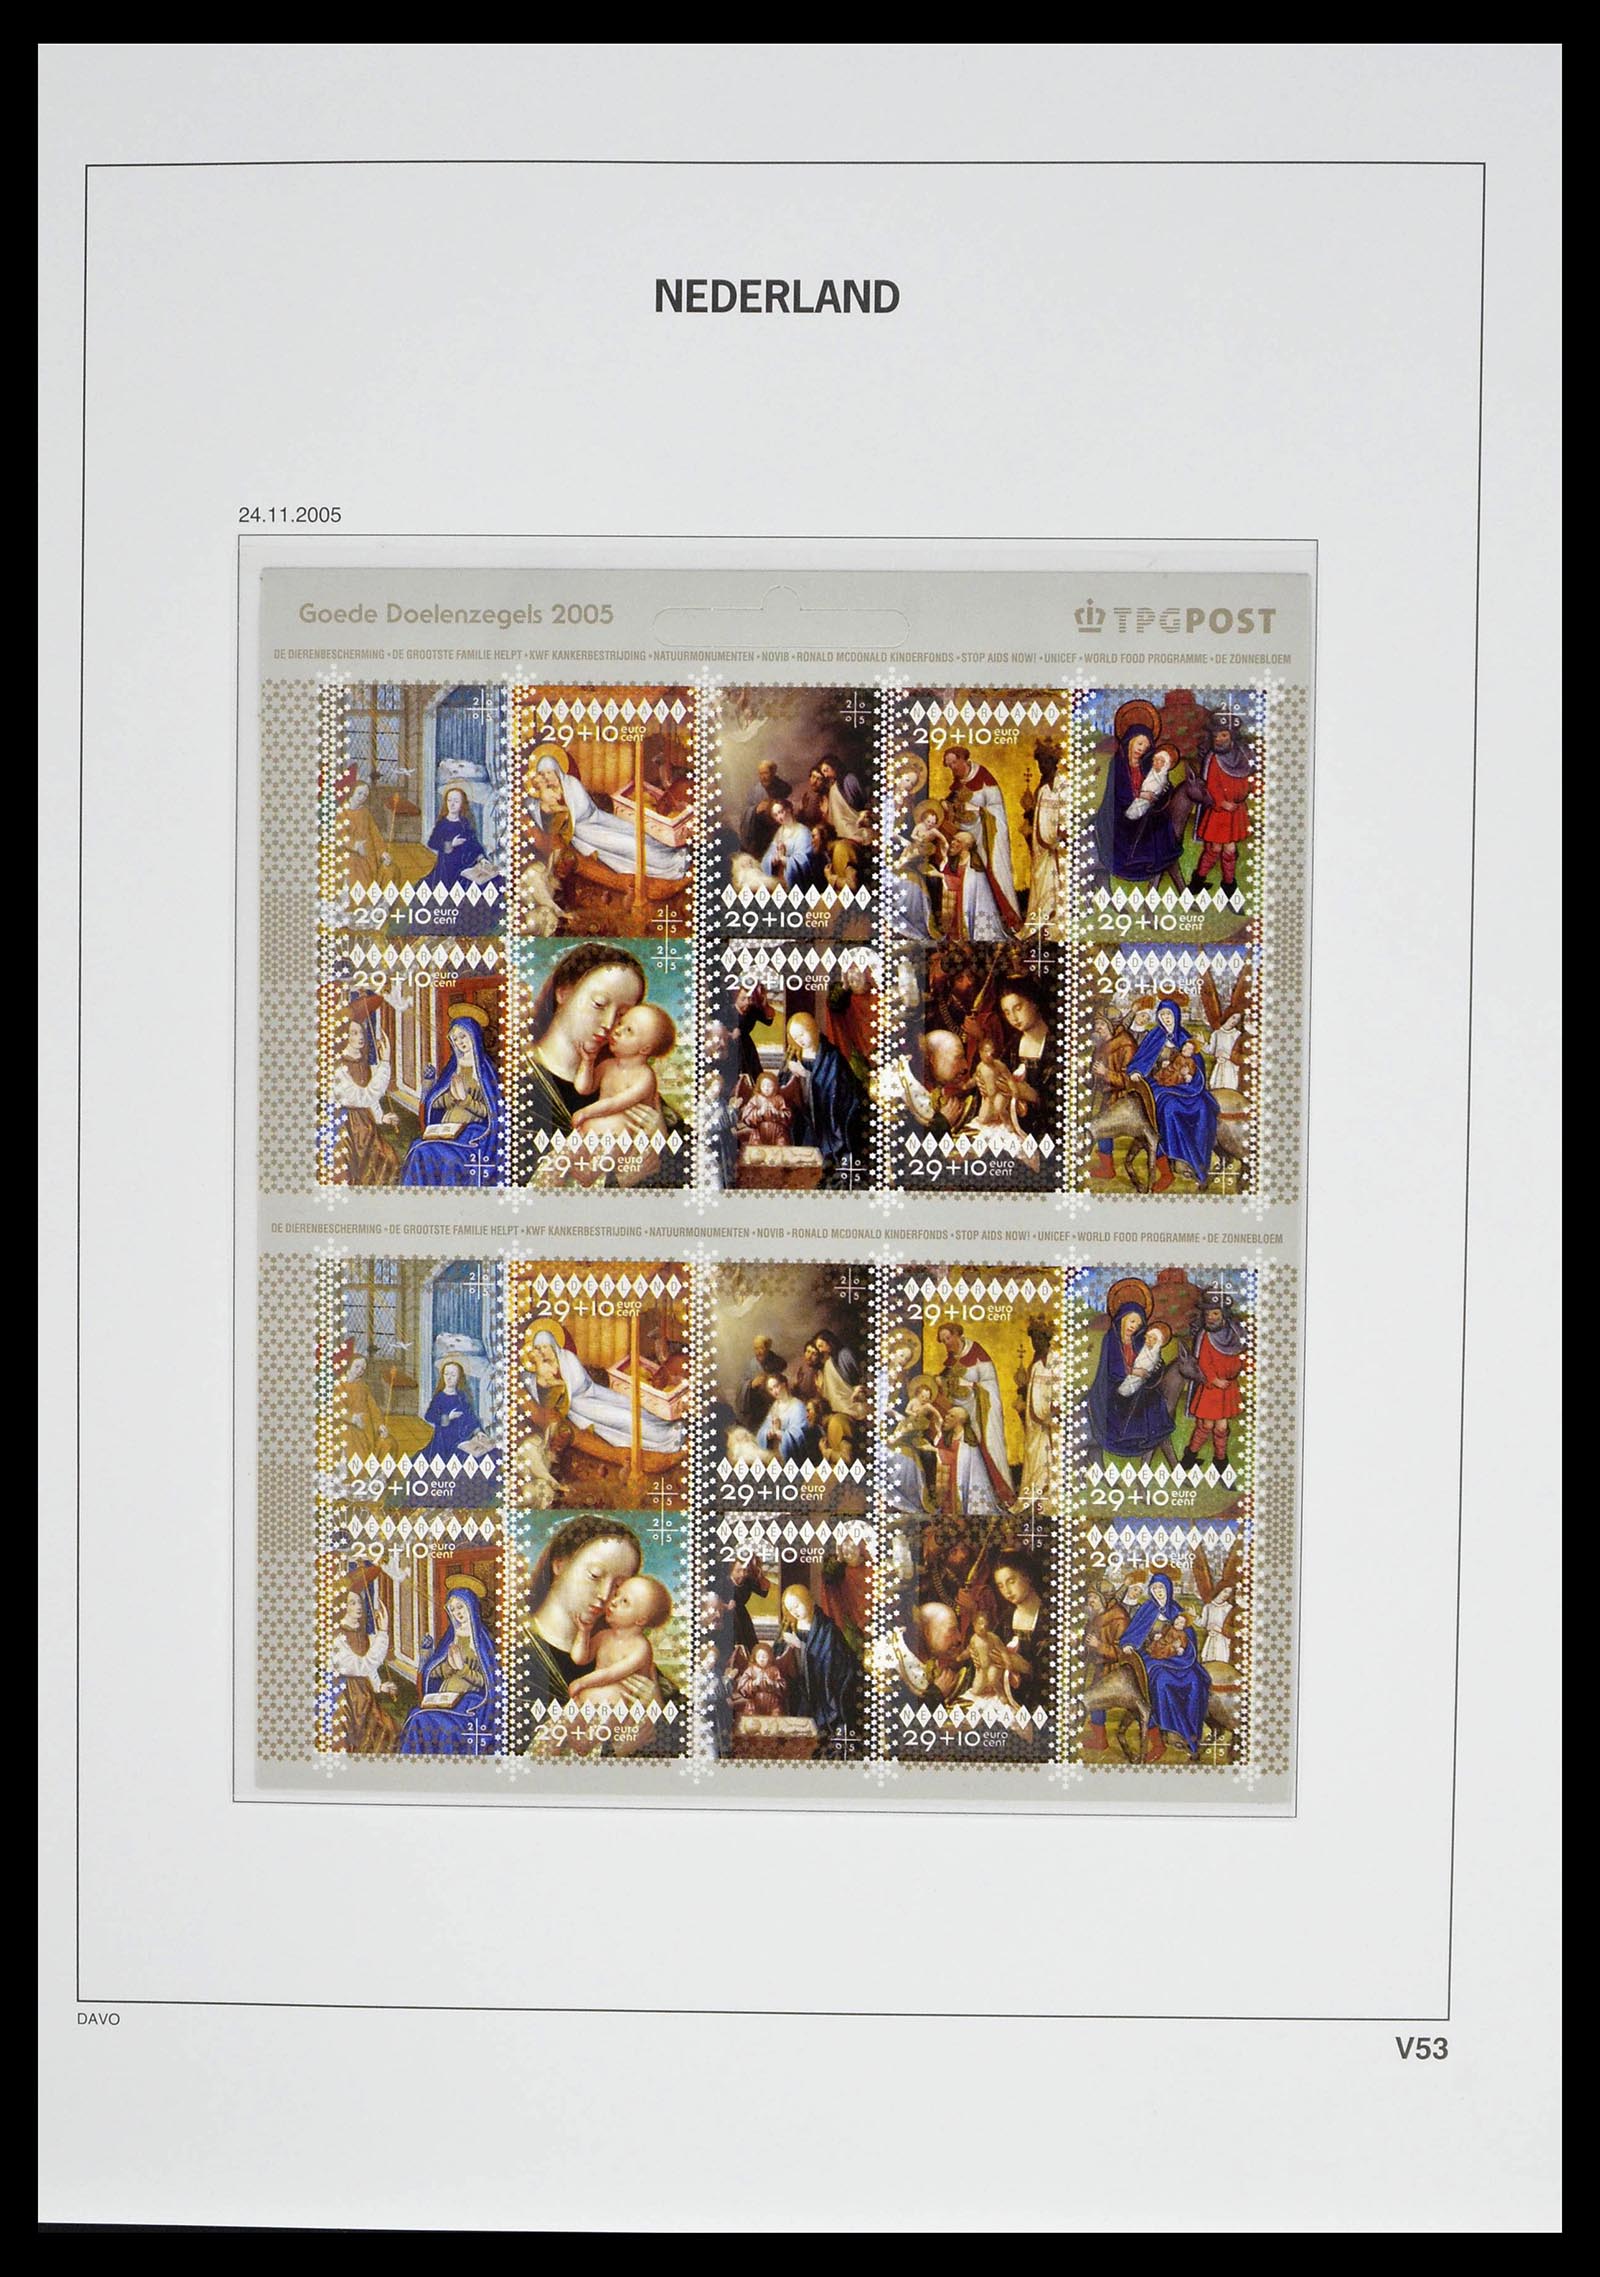 39134 0067 - Stamp collection 39134 Netherlands sheetlets 1992-2019!